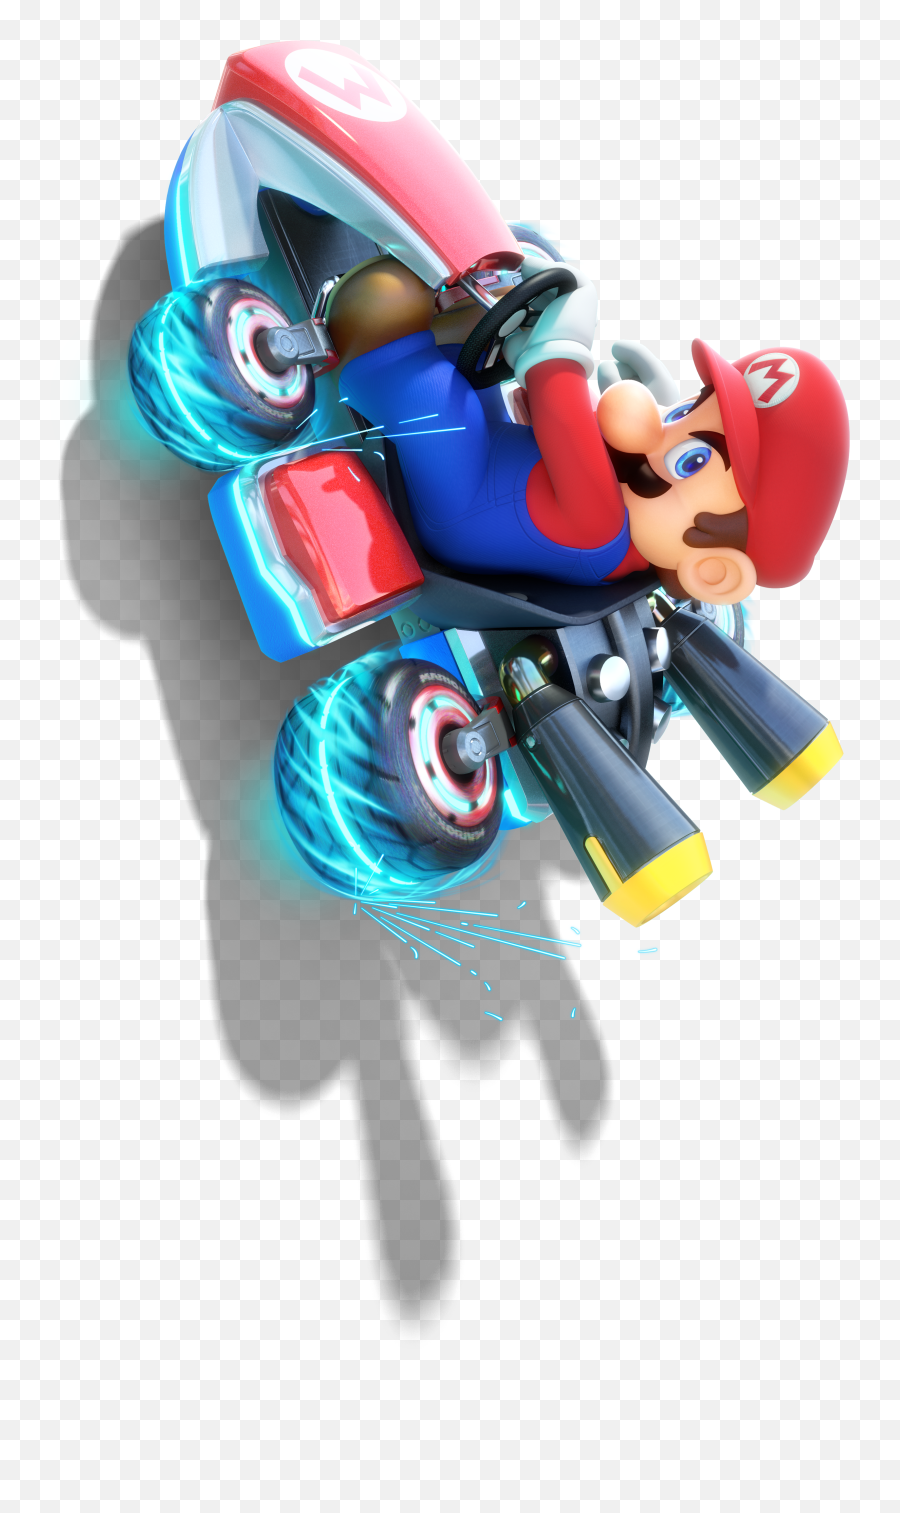 Mario - Mario Kart 8 Deluxe Png,Mario Kart 8 Png